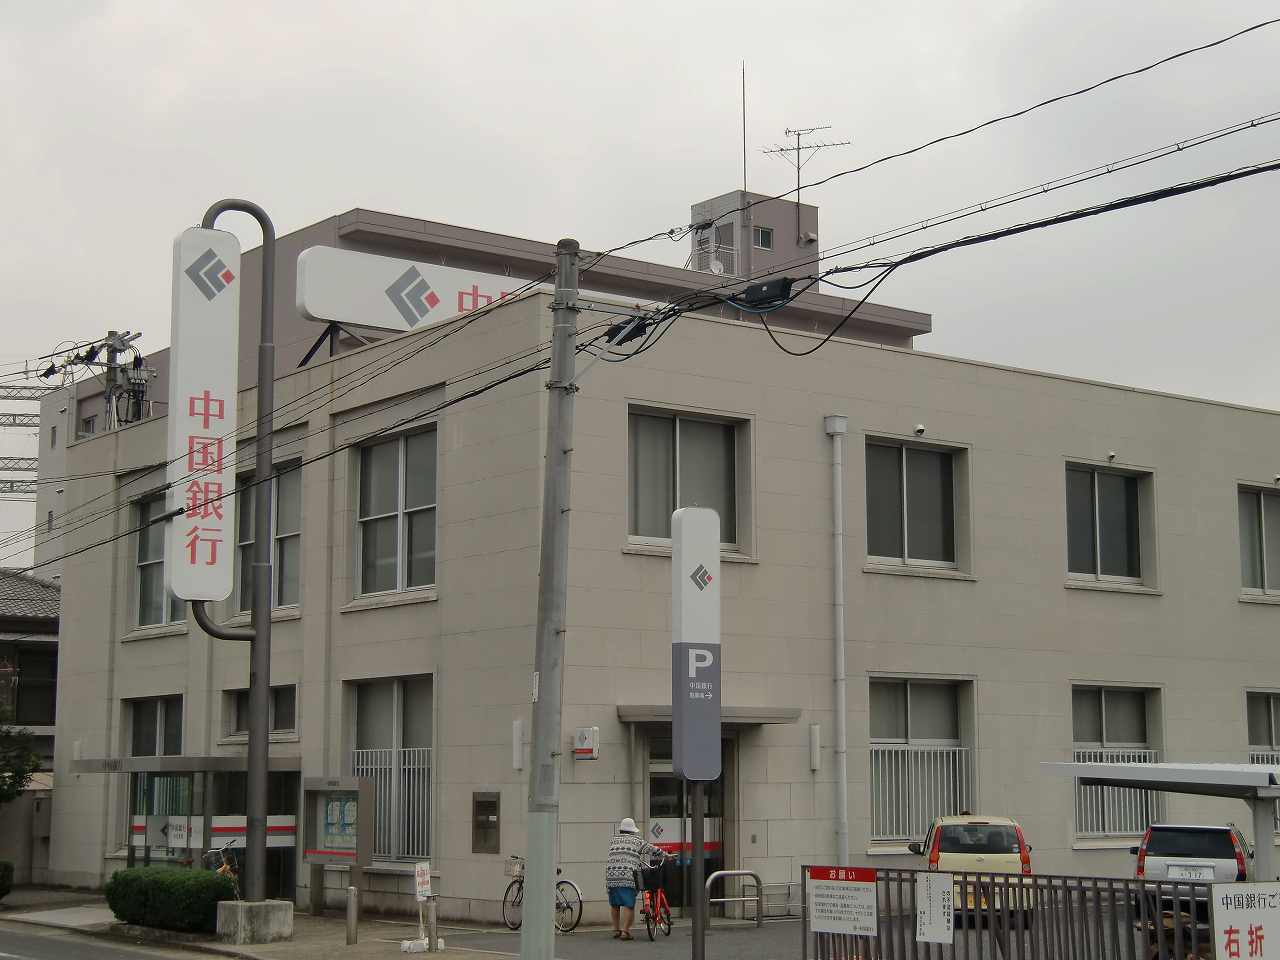 Bank. 309m to Bank of China Okayama city hall branch office (Bank)